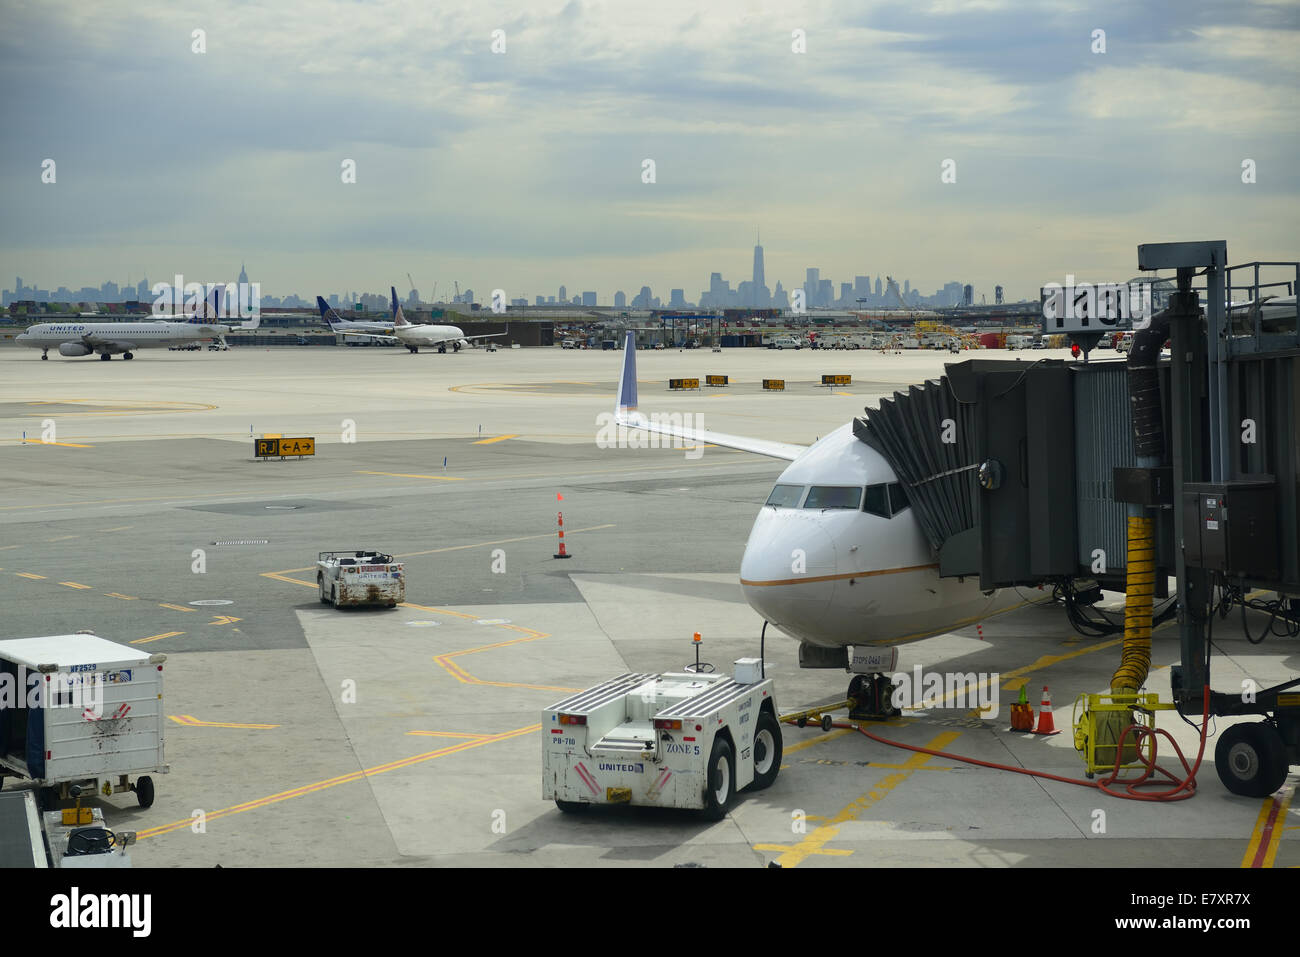 NEWARK, NJ - 11.Mai: Flugzeug am Flughafen mit Skyline von New York City am 11. Mai 2014 in Newark, New Jersey. Flughafen Newark ist 10. verkehrsreichsten in USA Stockfoto